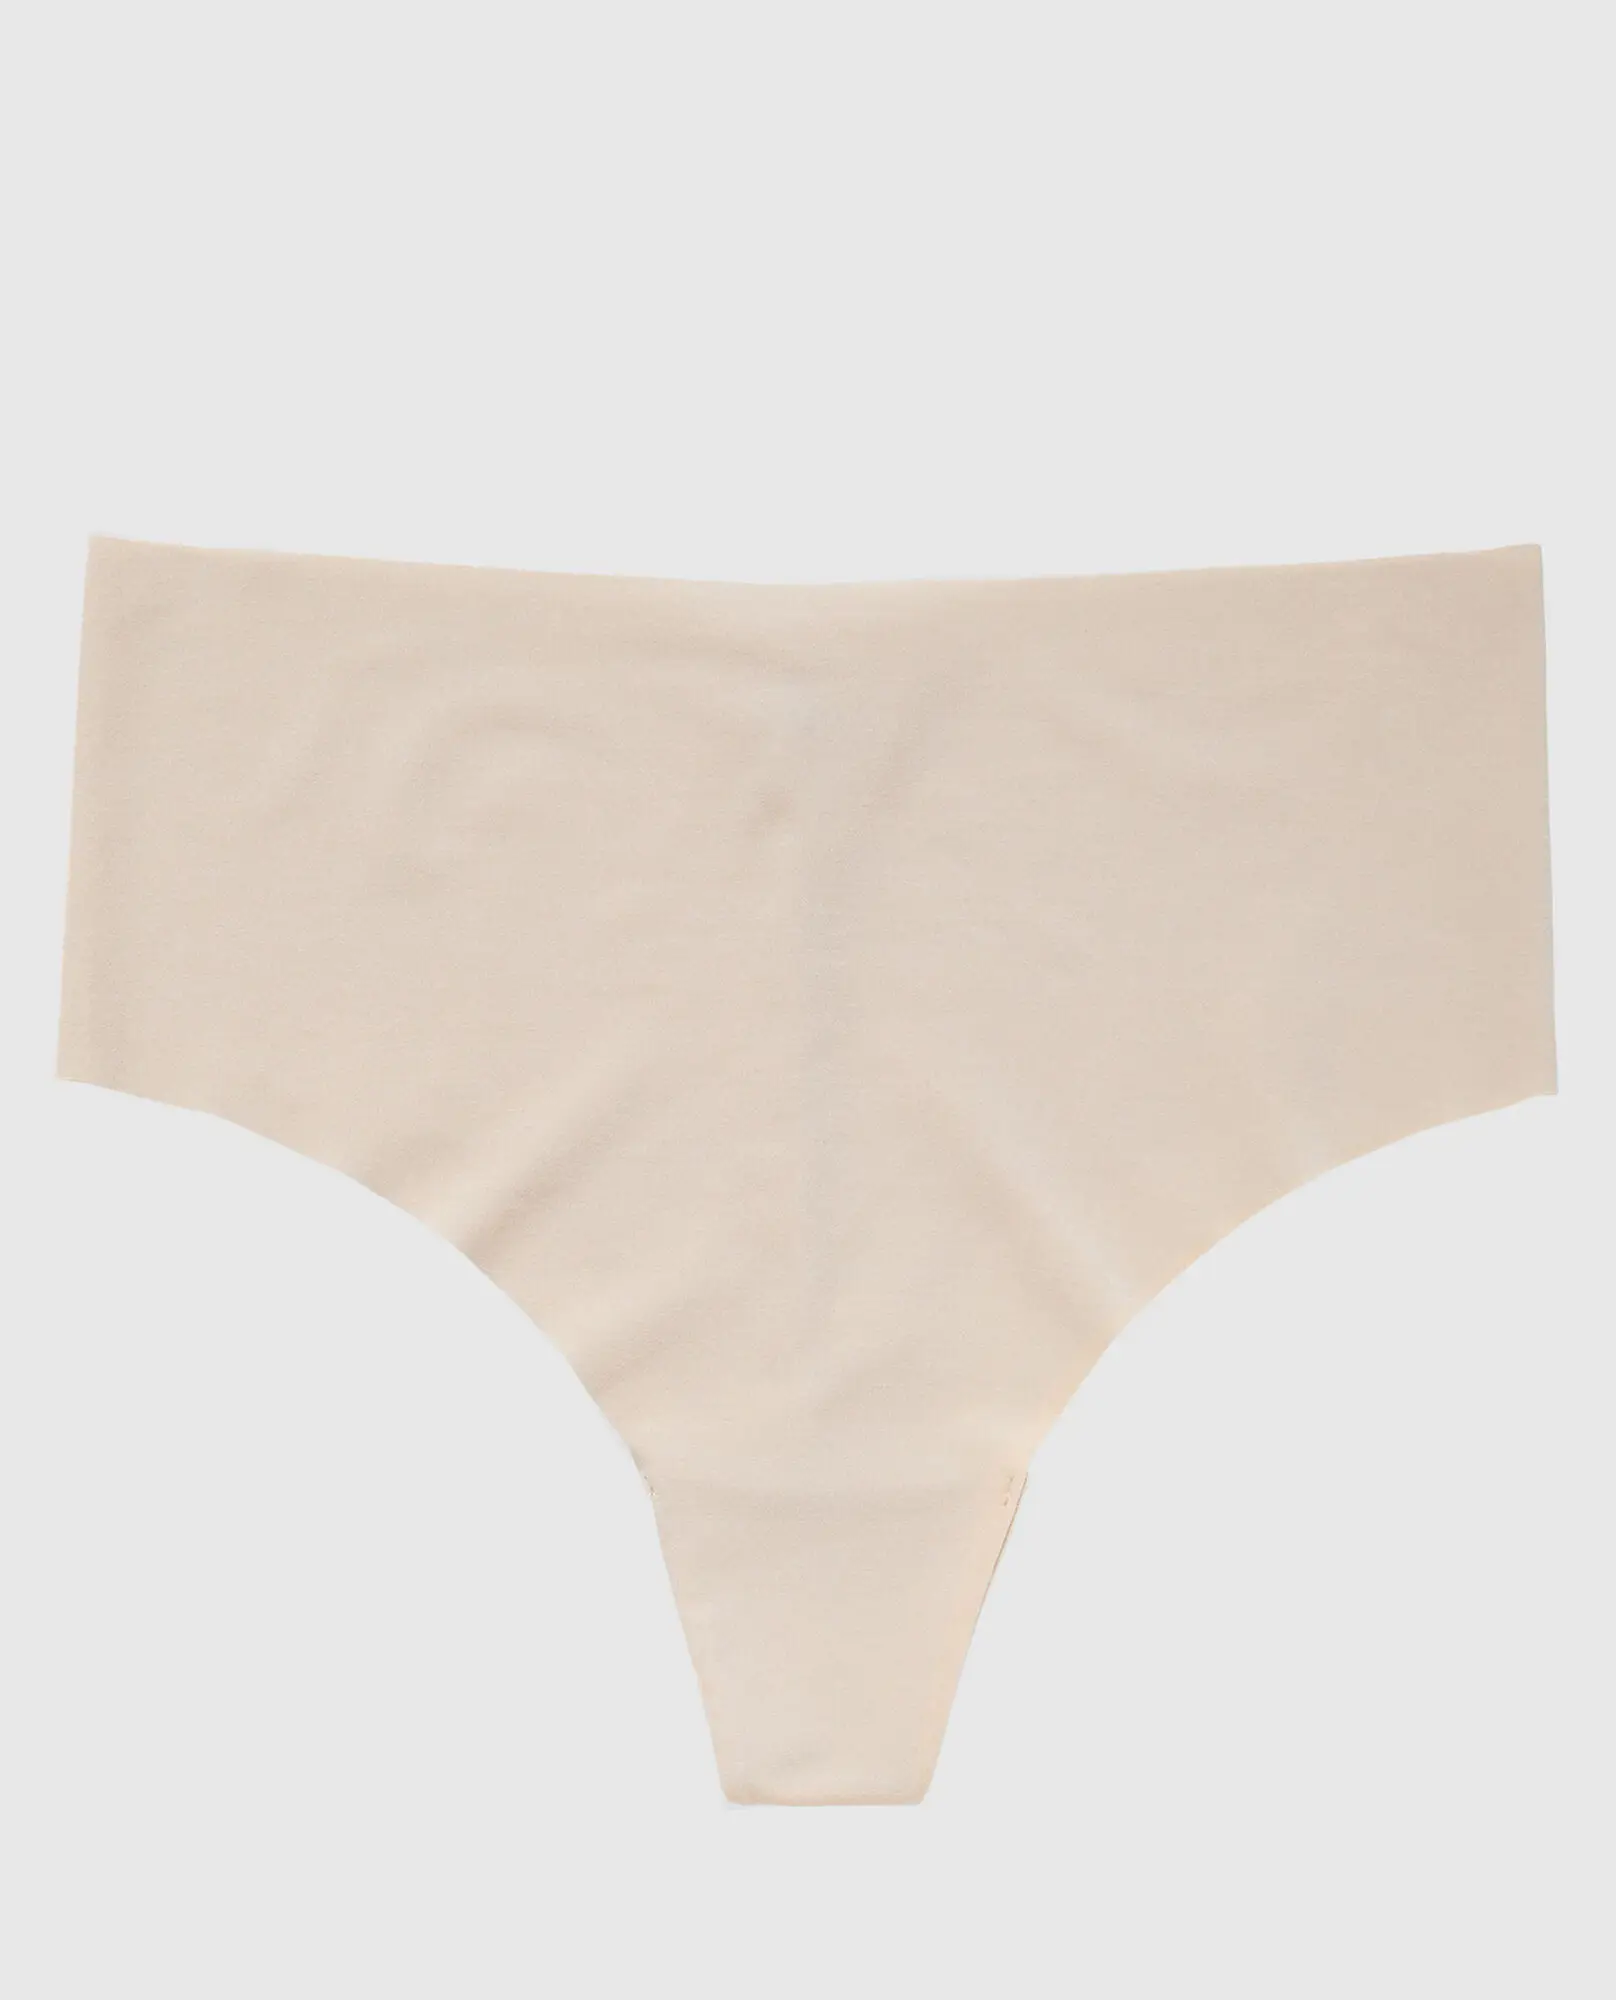 La Senza Invisible High Waist Thong Panty. 1